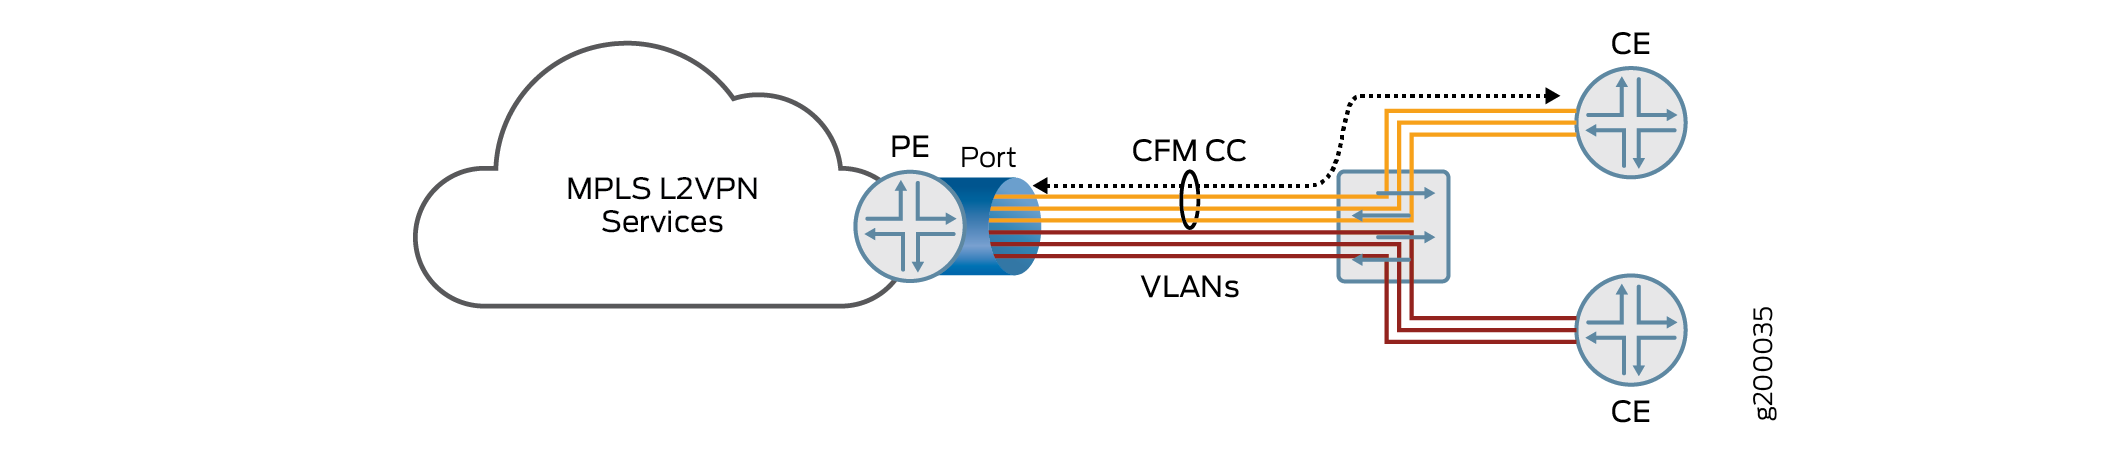 多个 VLAN 服务的拓扑，在 PE 路由器上共享一个端口，发送至多个 CE 路由器